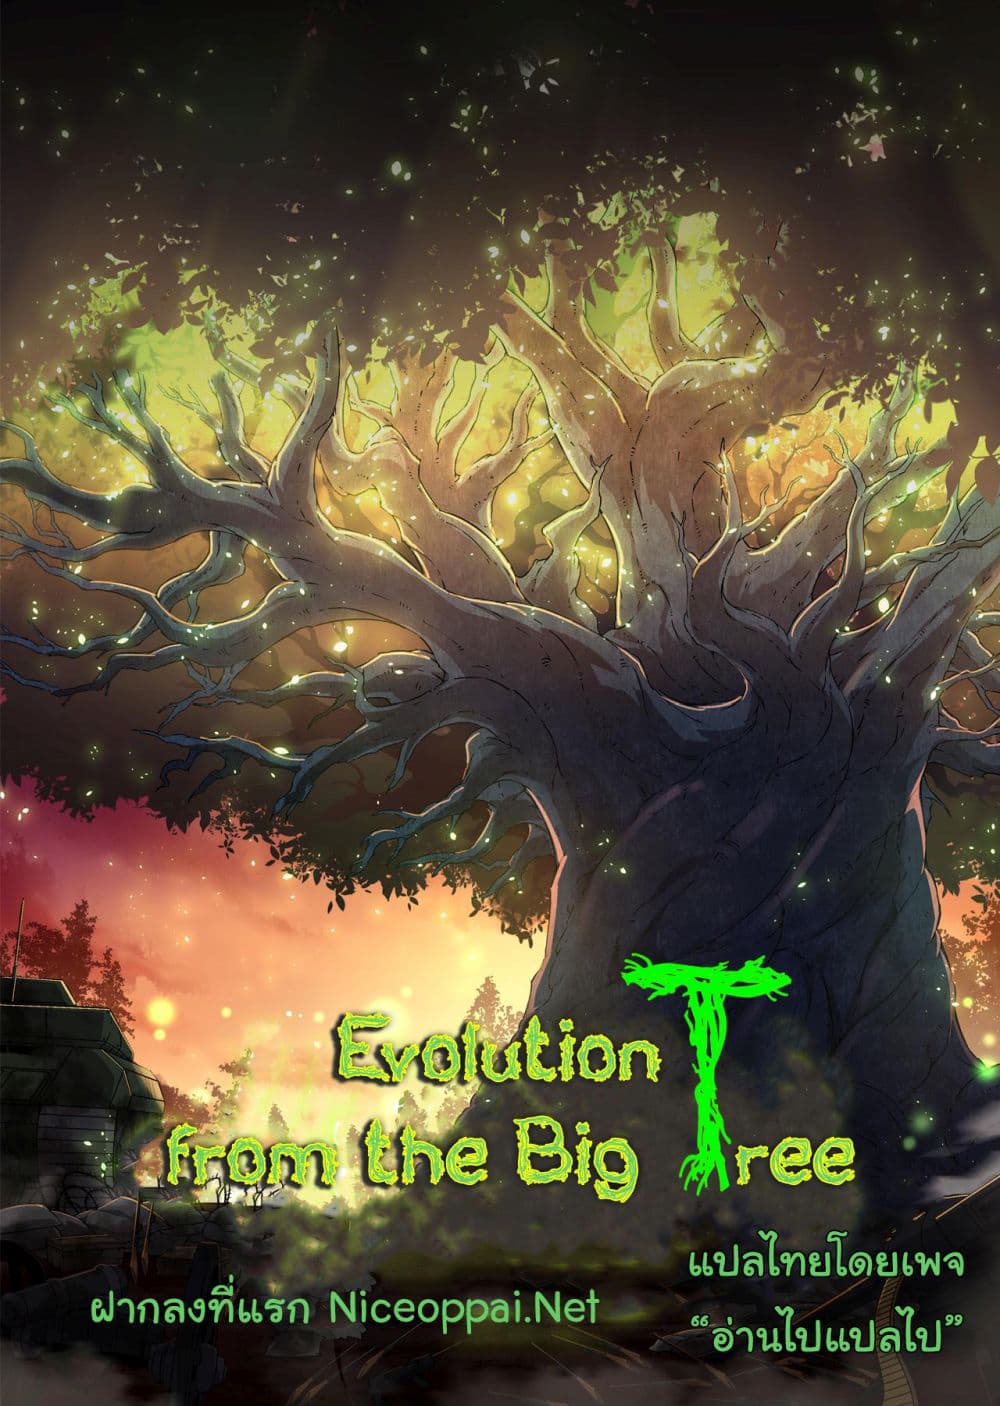 Evolution from the Big Tree Ã Â¸â€¢Ã Â¸Â­Ã Â¸â„¢Ã Â¸â€”Ã Â¸ÂµÃ Â¹Ë† 7 (1)